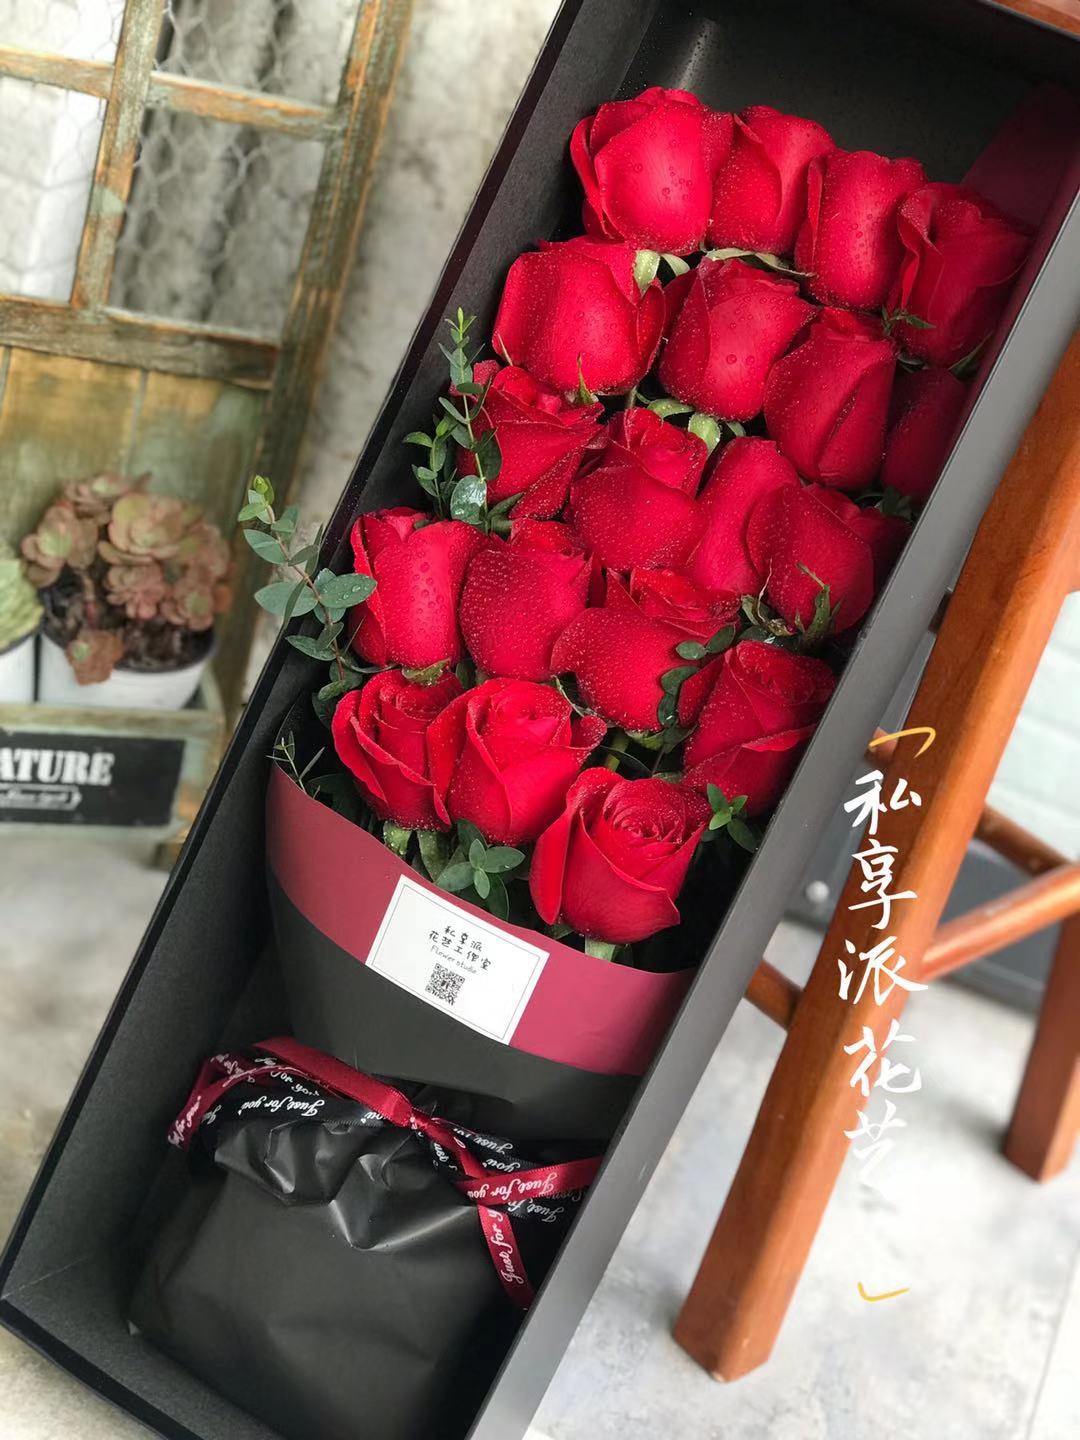 情人节专属套餐19朵红玫瑰长条礼盒提前打电话或微信预约15553616291